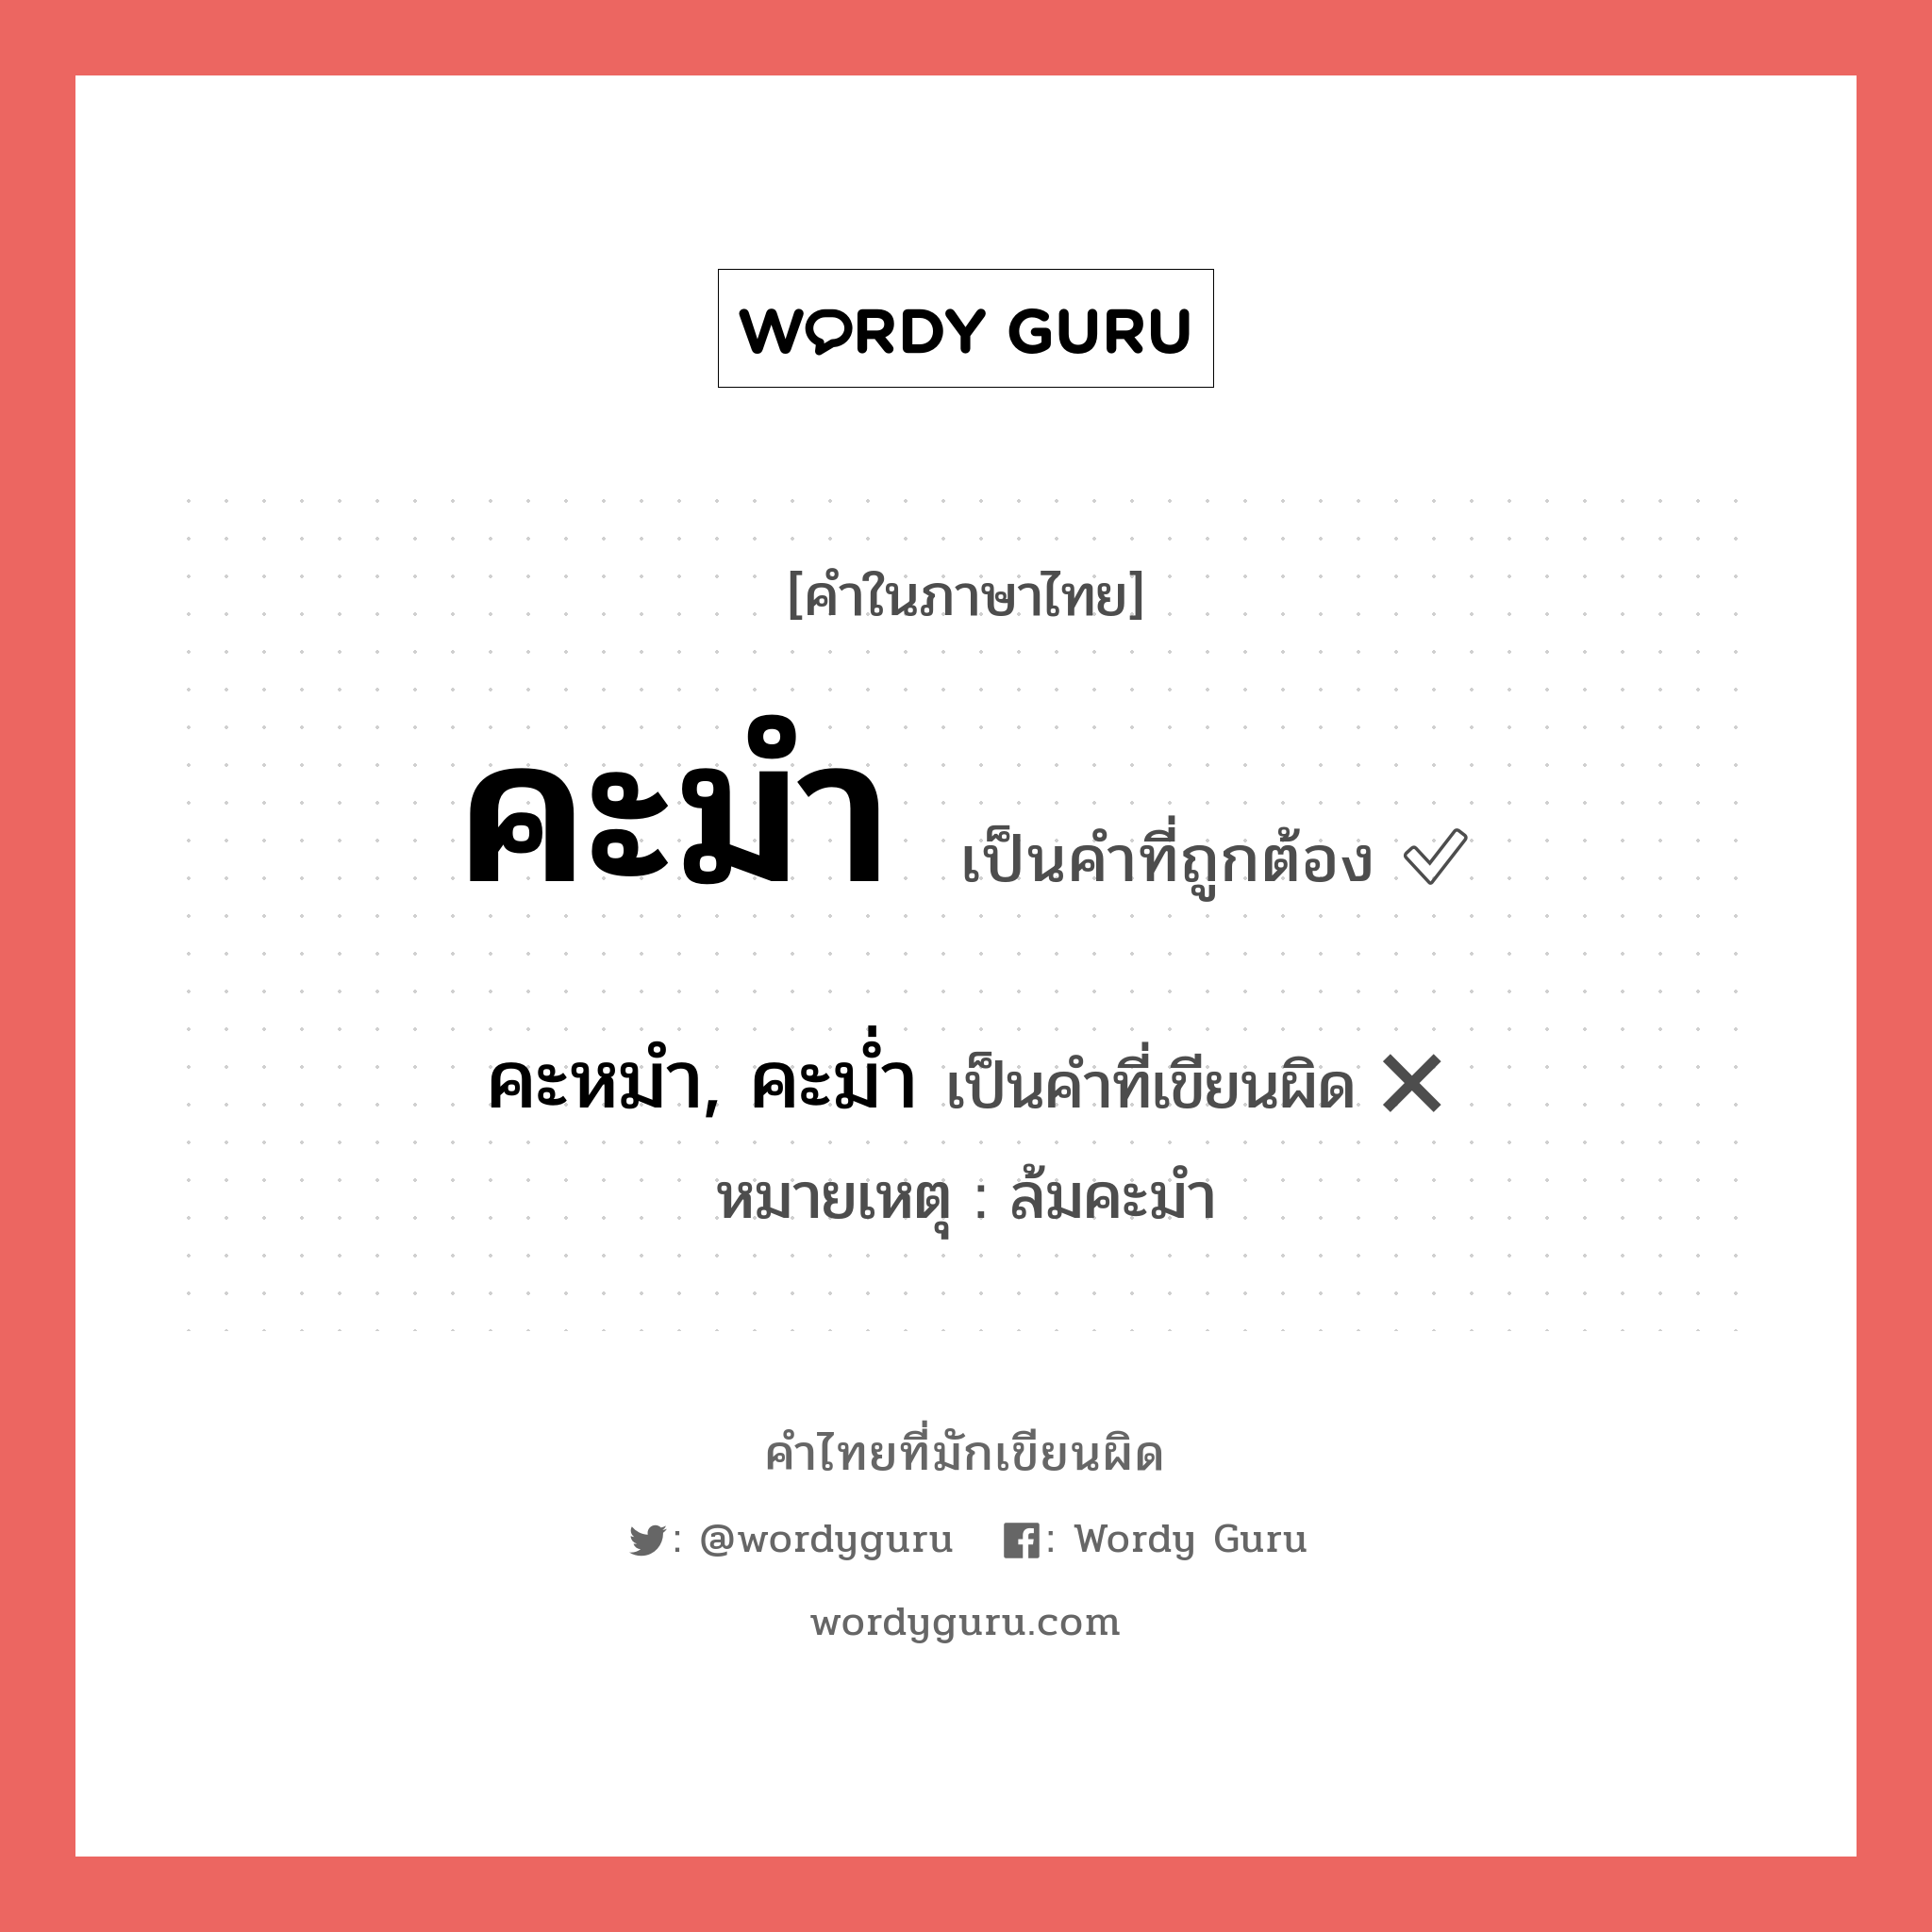 คะมำ หรือ คะหมำ, คะม่ำ คำไหนเขียนถูก?, คำในภาษาไทยที่มักเขียนผิด คะมำ คำที่ผิด ❌ คะหมำ, คะม่ำ หมายเหตุ ล้มคะมำ